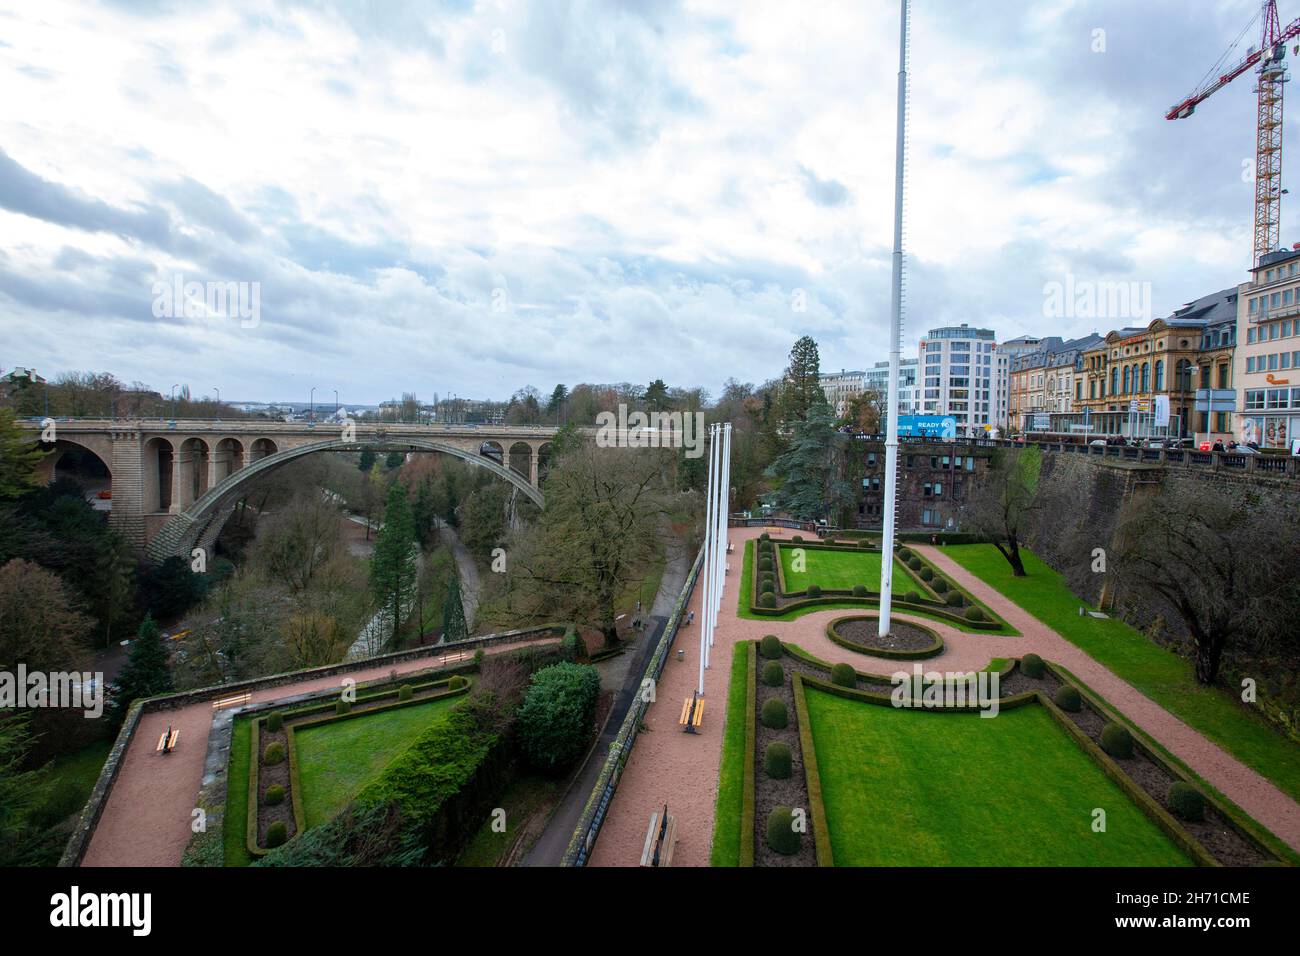 Vista panorámica de la ciudad de Luxemburgo con el famoso puente Adolphe y la plaza de la Constitución y el parque Foto de stock